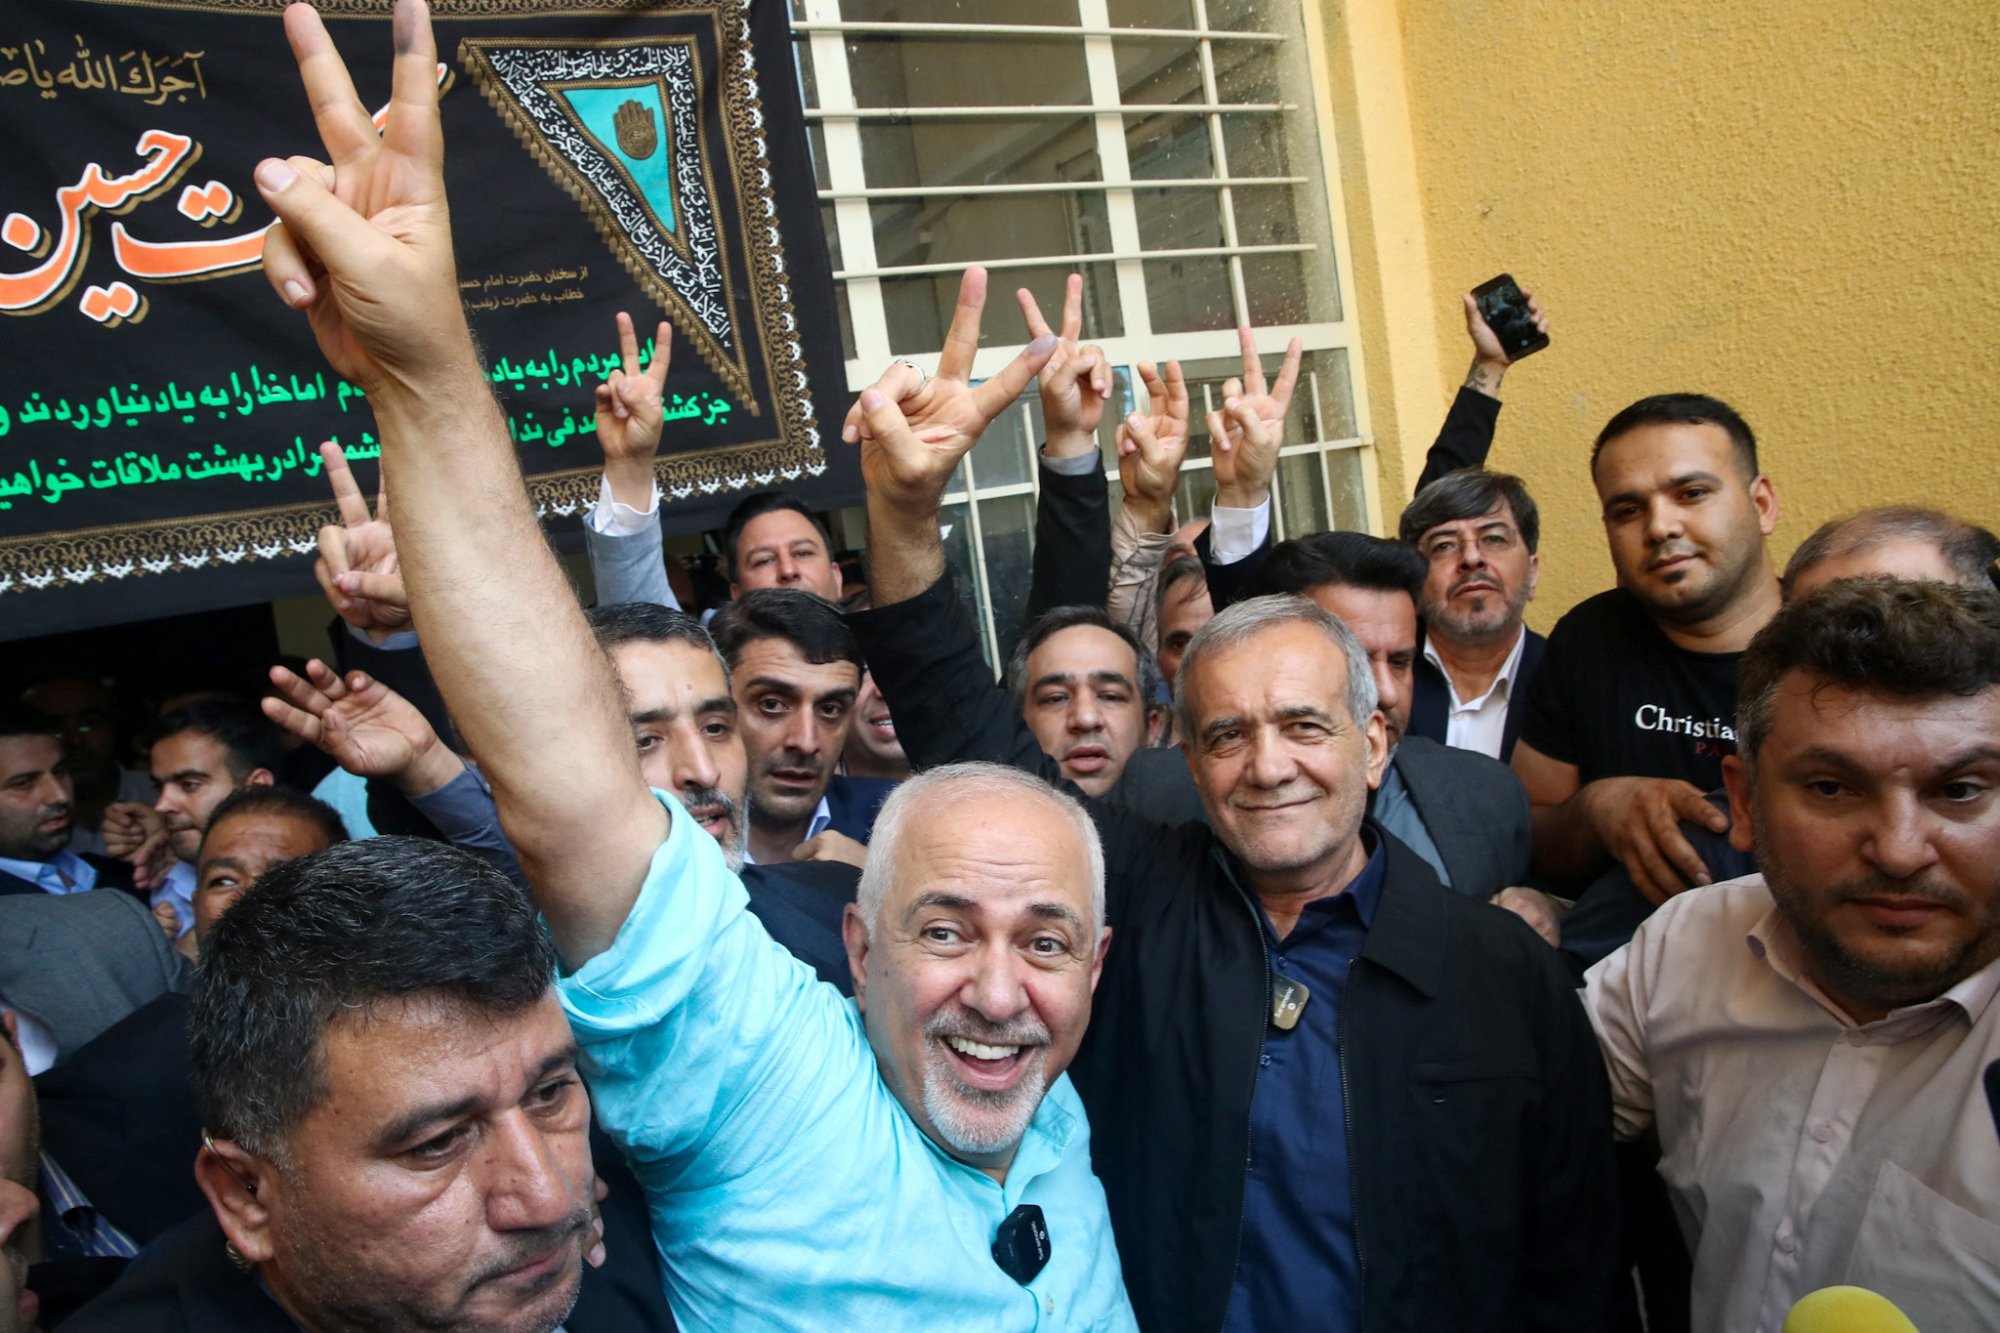 Μασούντ Πεζεσκιάν: Οι πρώτες αναρτήσεις ως πρόεδρος του Ιράν - «Σας απλώνω το χέρι μου...»